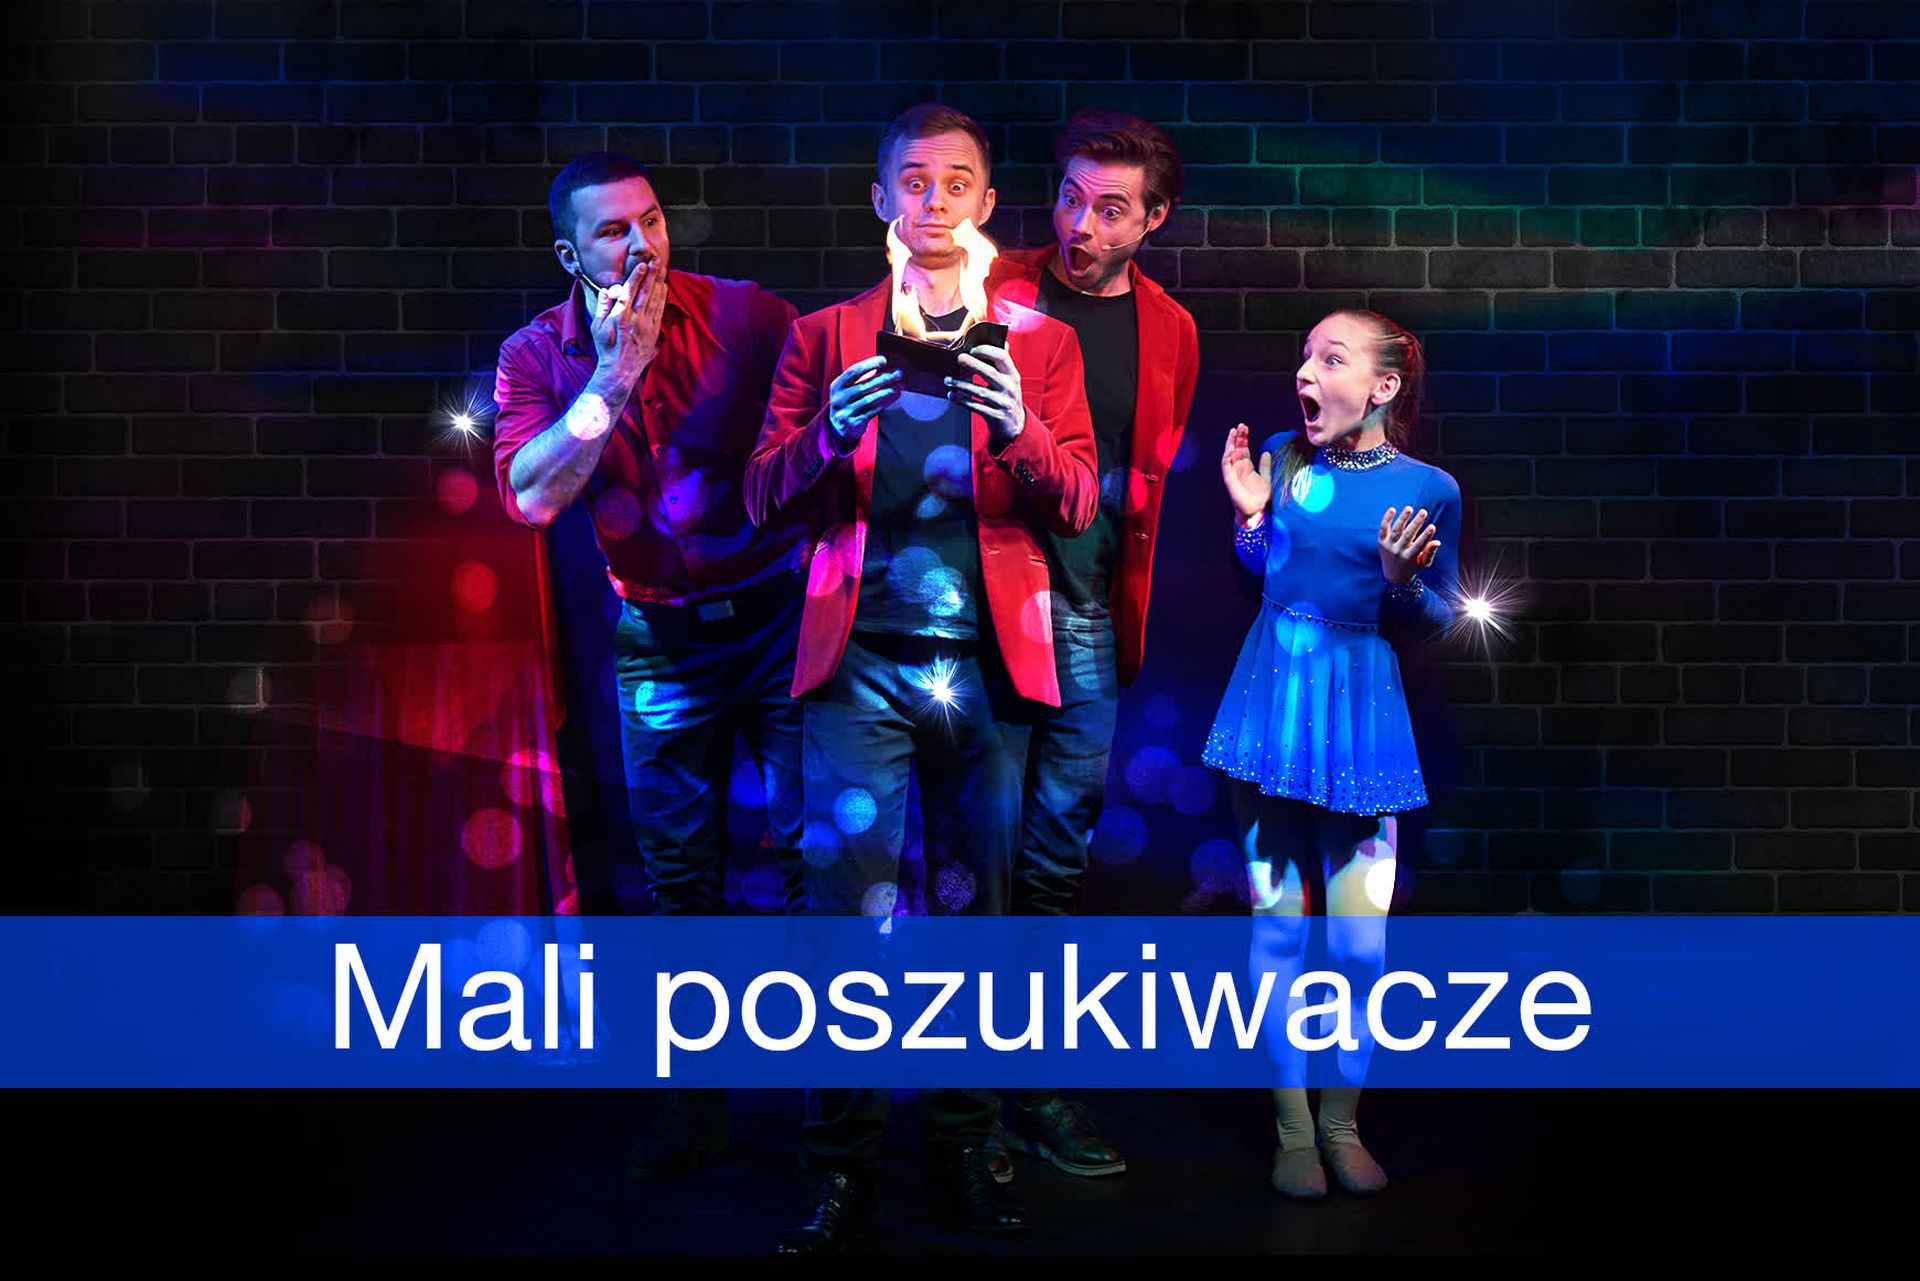 Marcin Mroziński - oferta eventowa dla przedszkoli i szkół dla najmłodszych dzieci